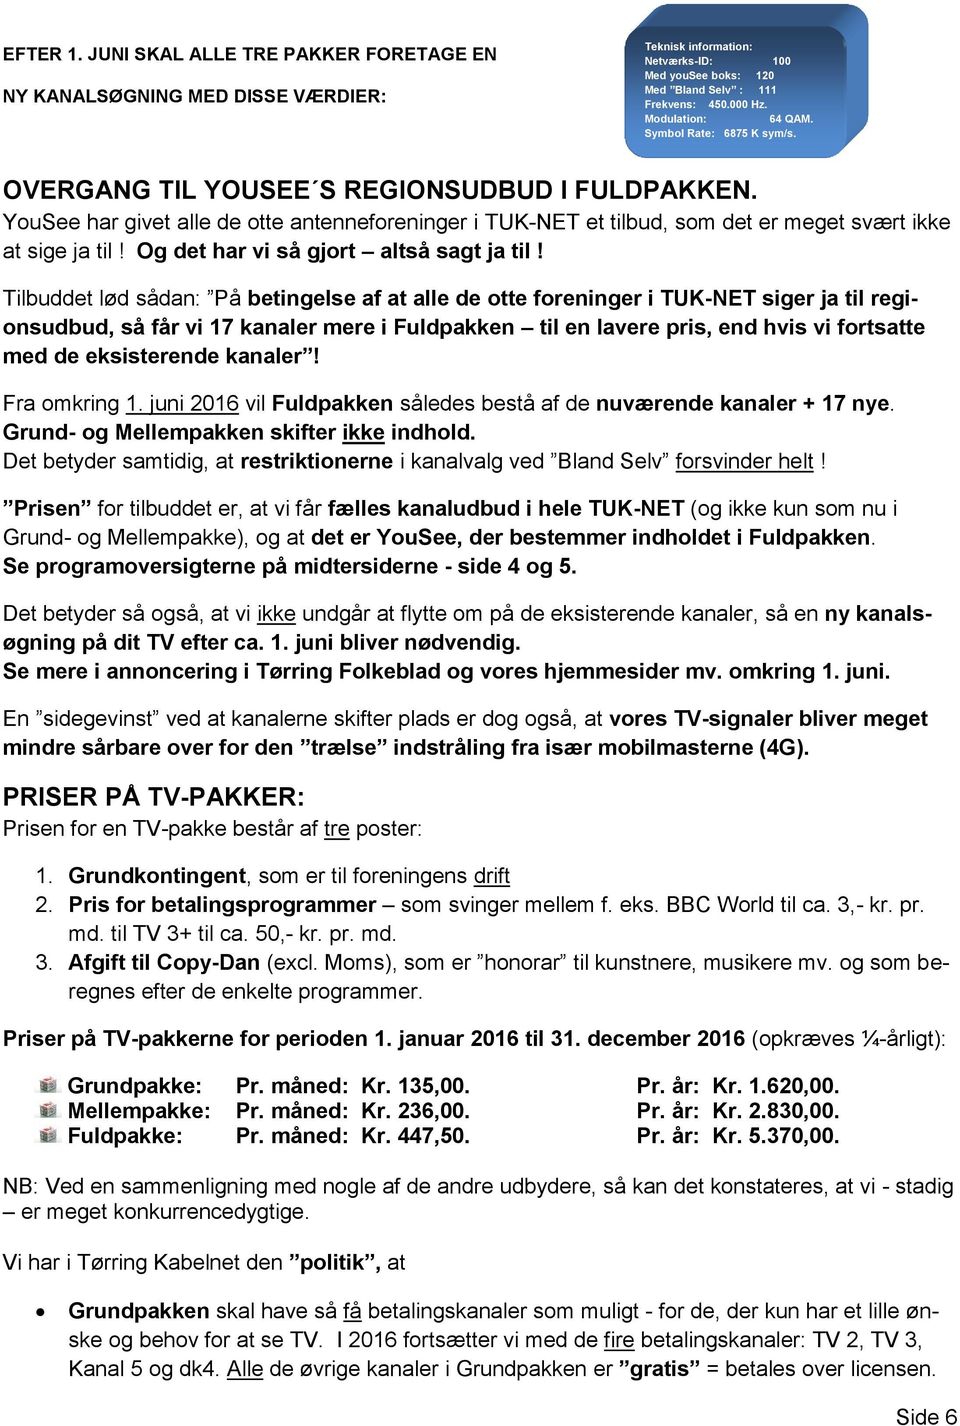 Tørring Kabelnet. Nyhedsbrev PDF Free Download